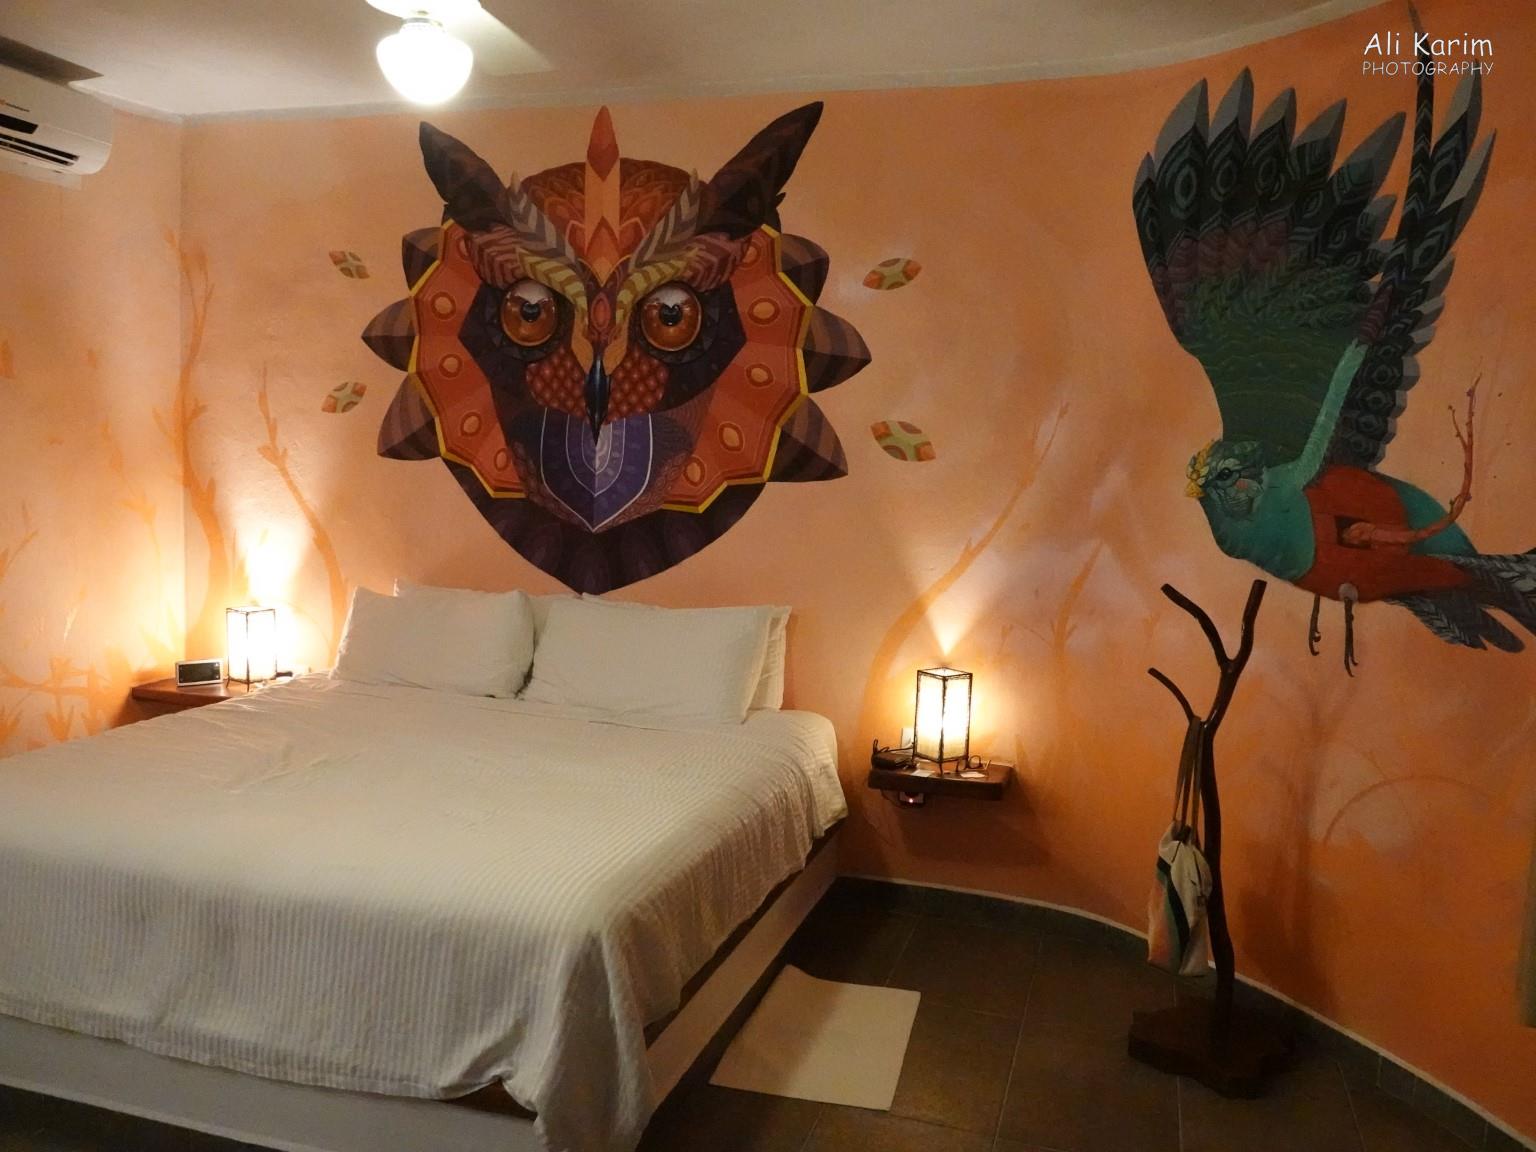 Valladolid, Yucatan, Mexico Feb 2021, Hotel room had very interesting artwork everywhere. Unique